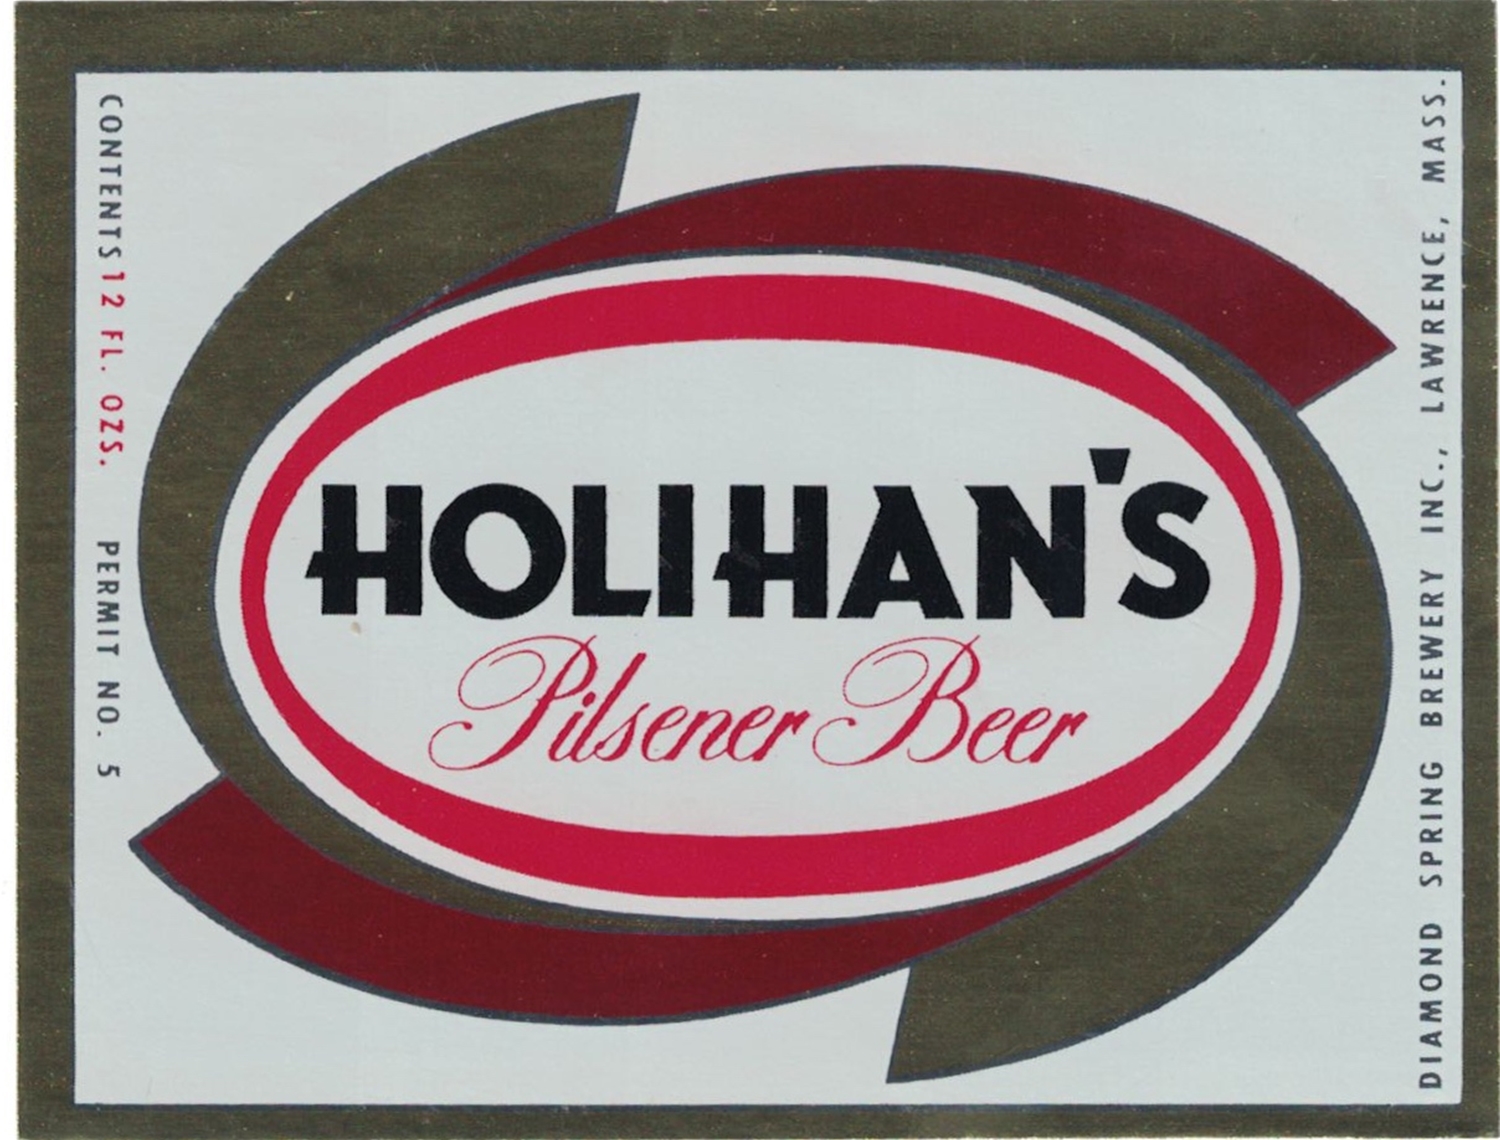 Holihan's Pilsener Beer Label